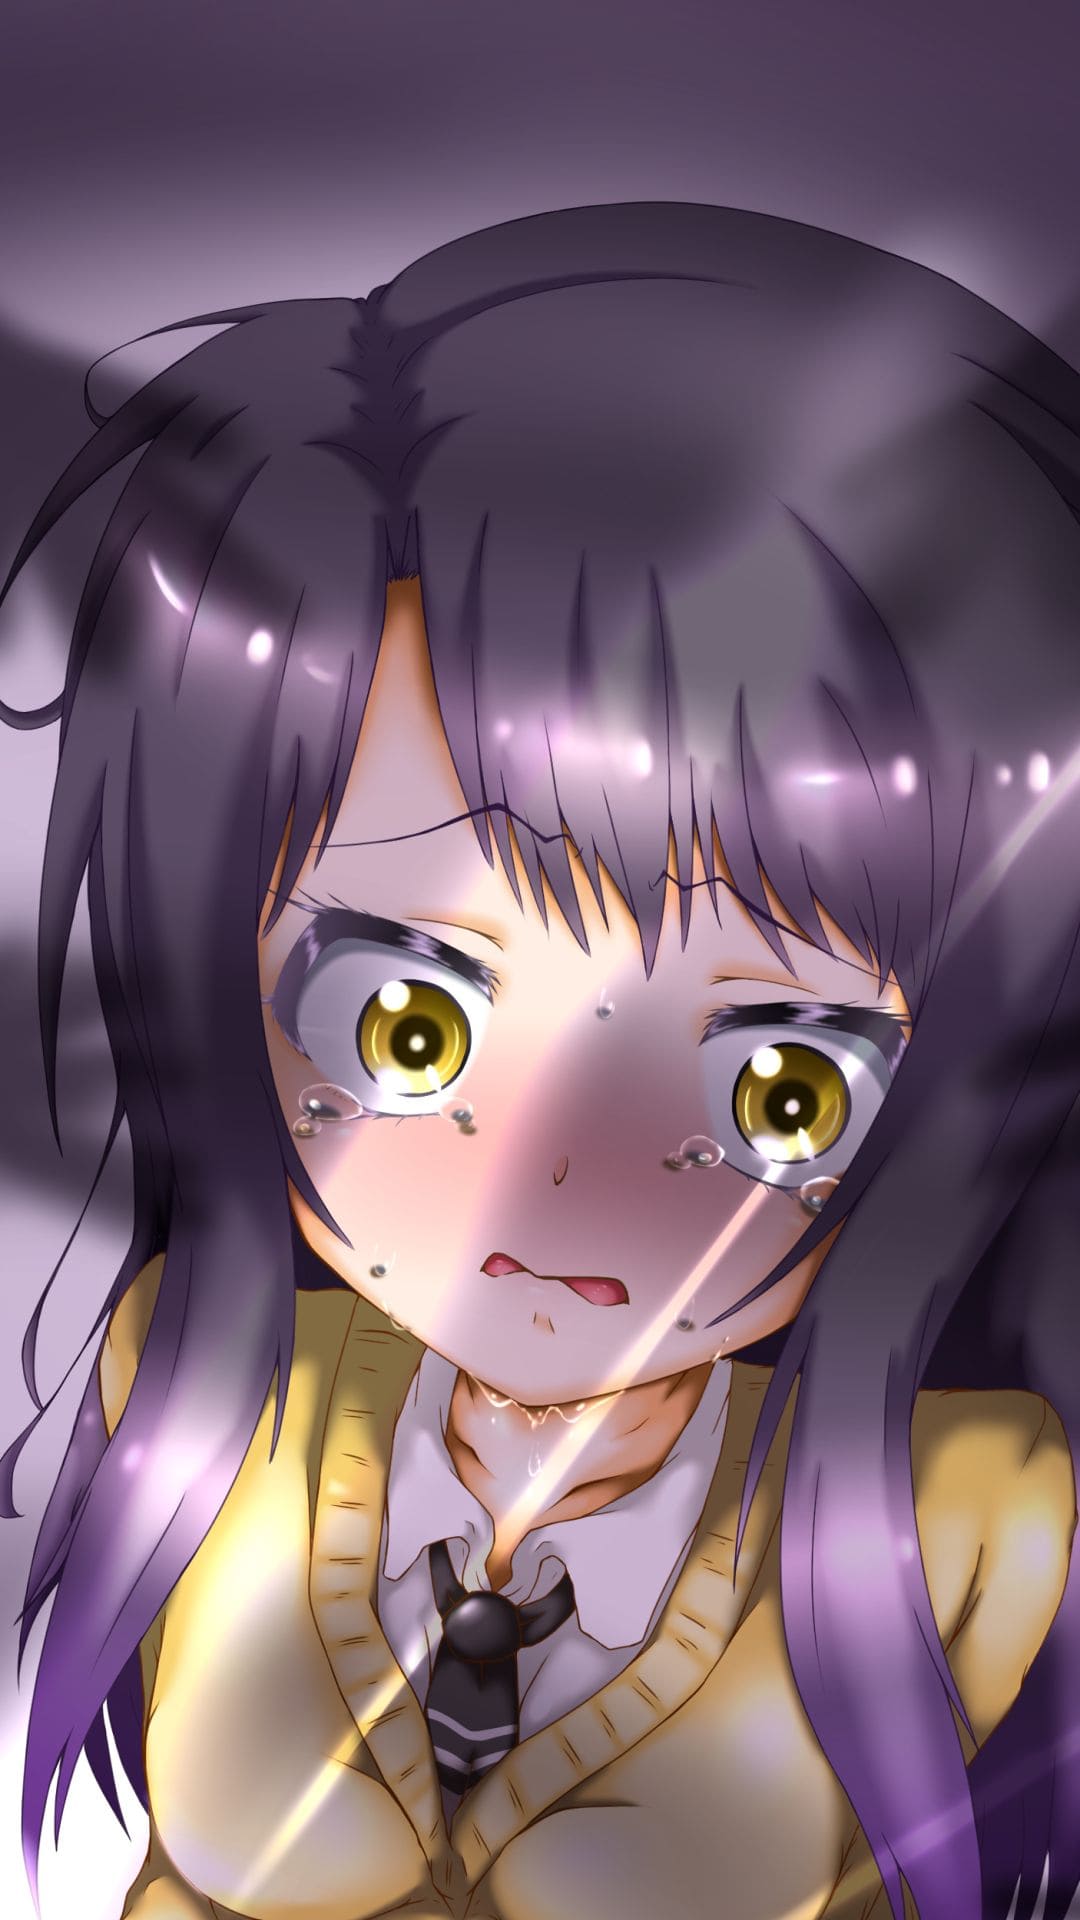 Anime girl purple eyes dark skull wallpaper background - Wallpapers